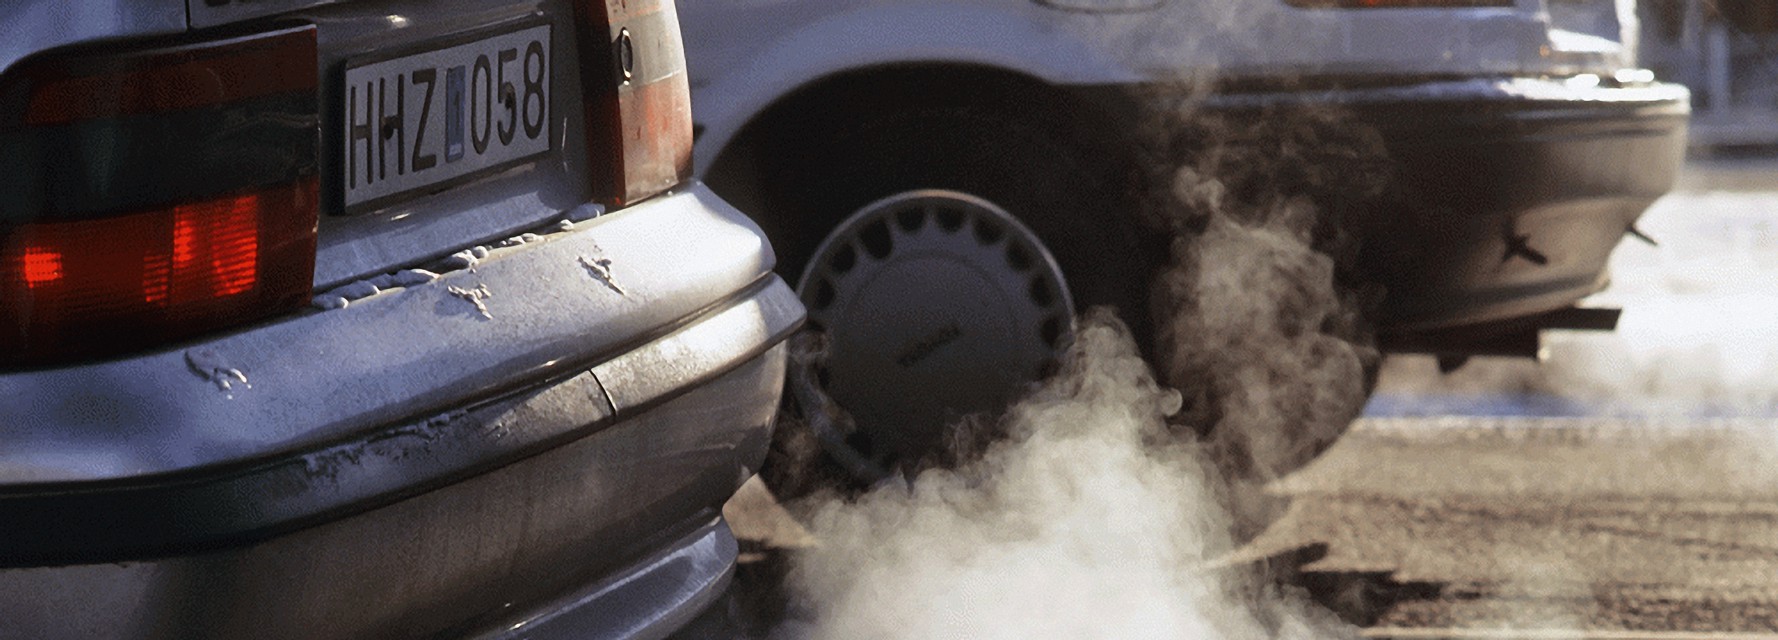 Tiêu chuẩn khí thải ô tô được nâng lên từ ngày 1/1/2021